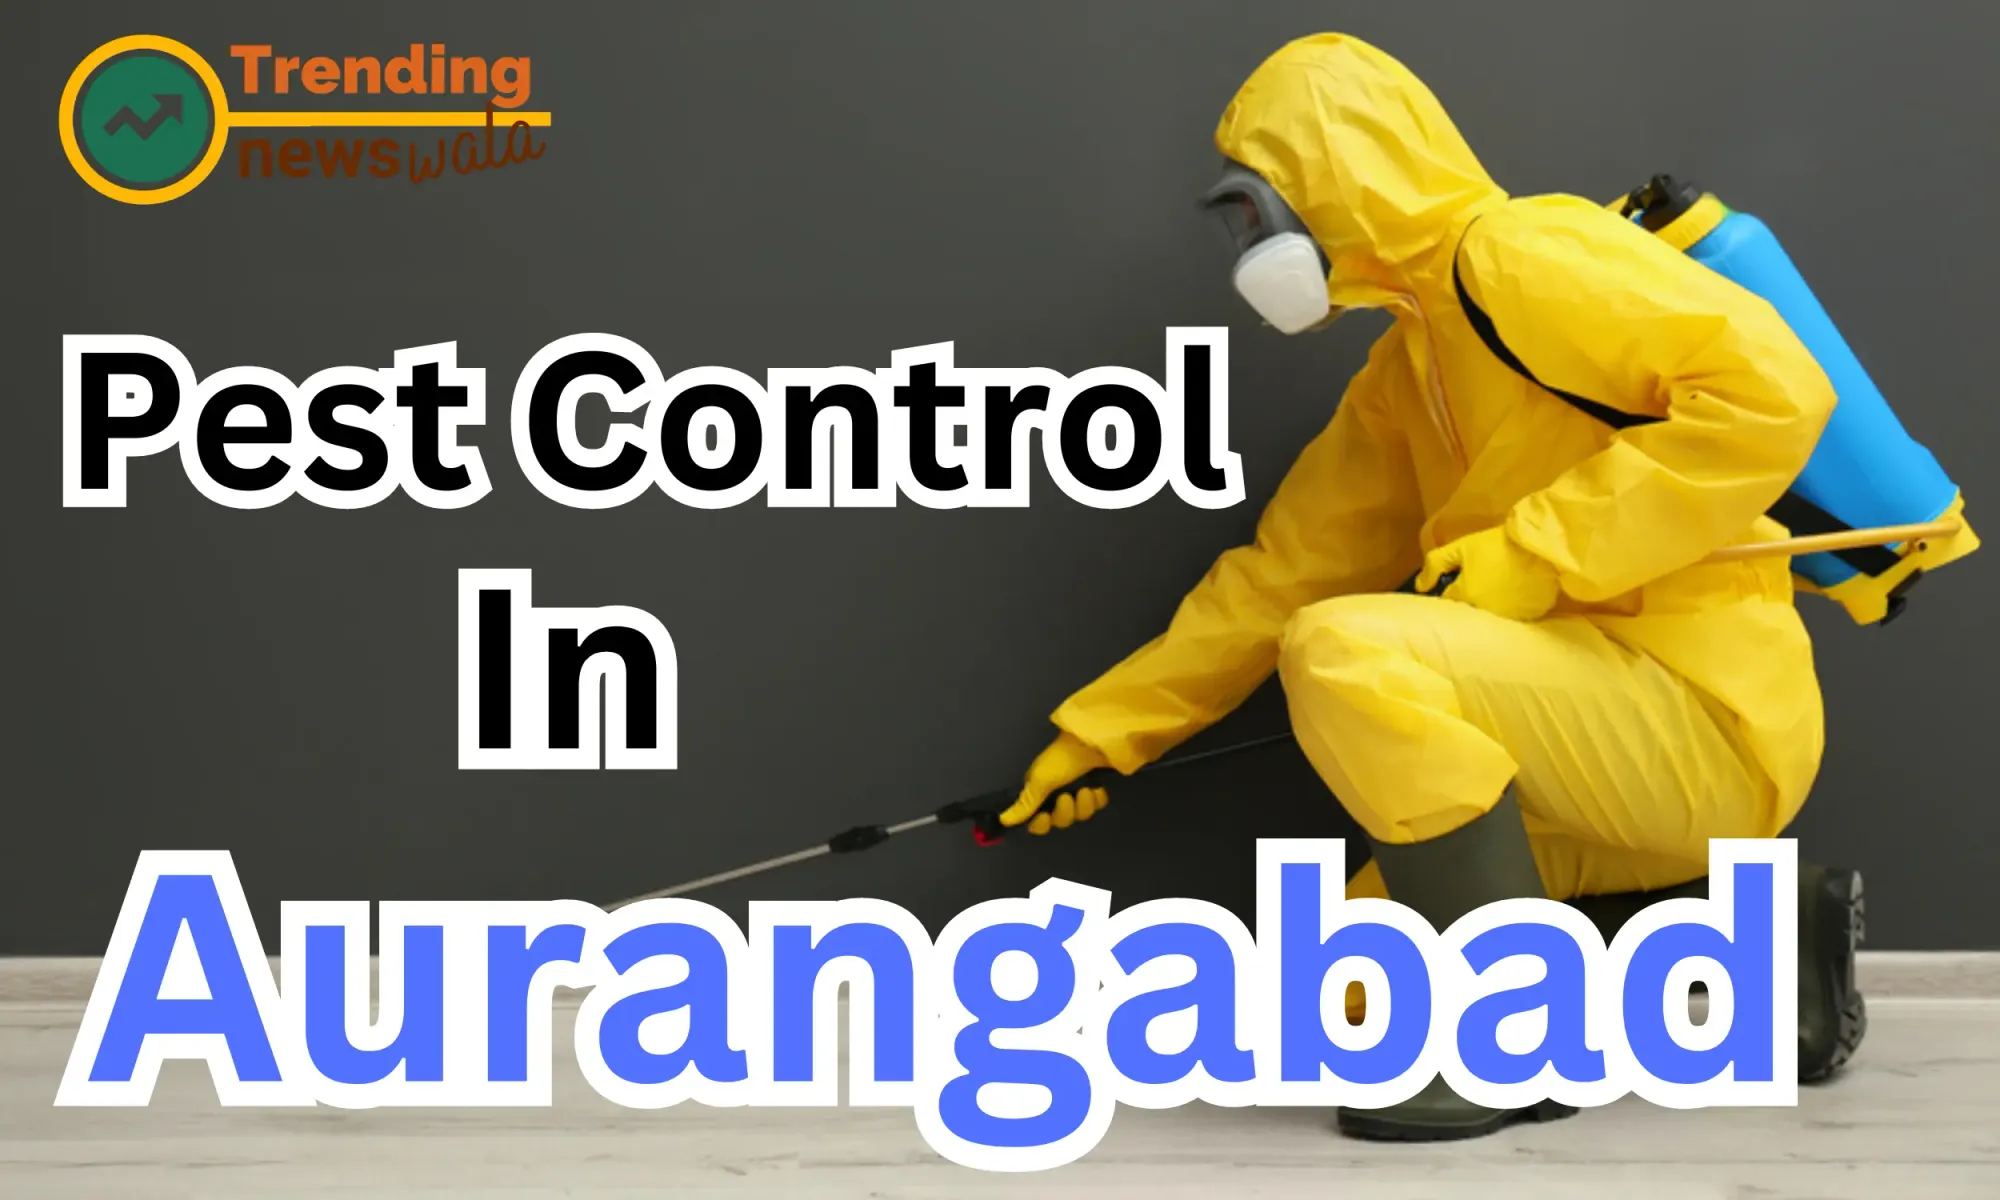 Pest Control Service in Aurangabad